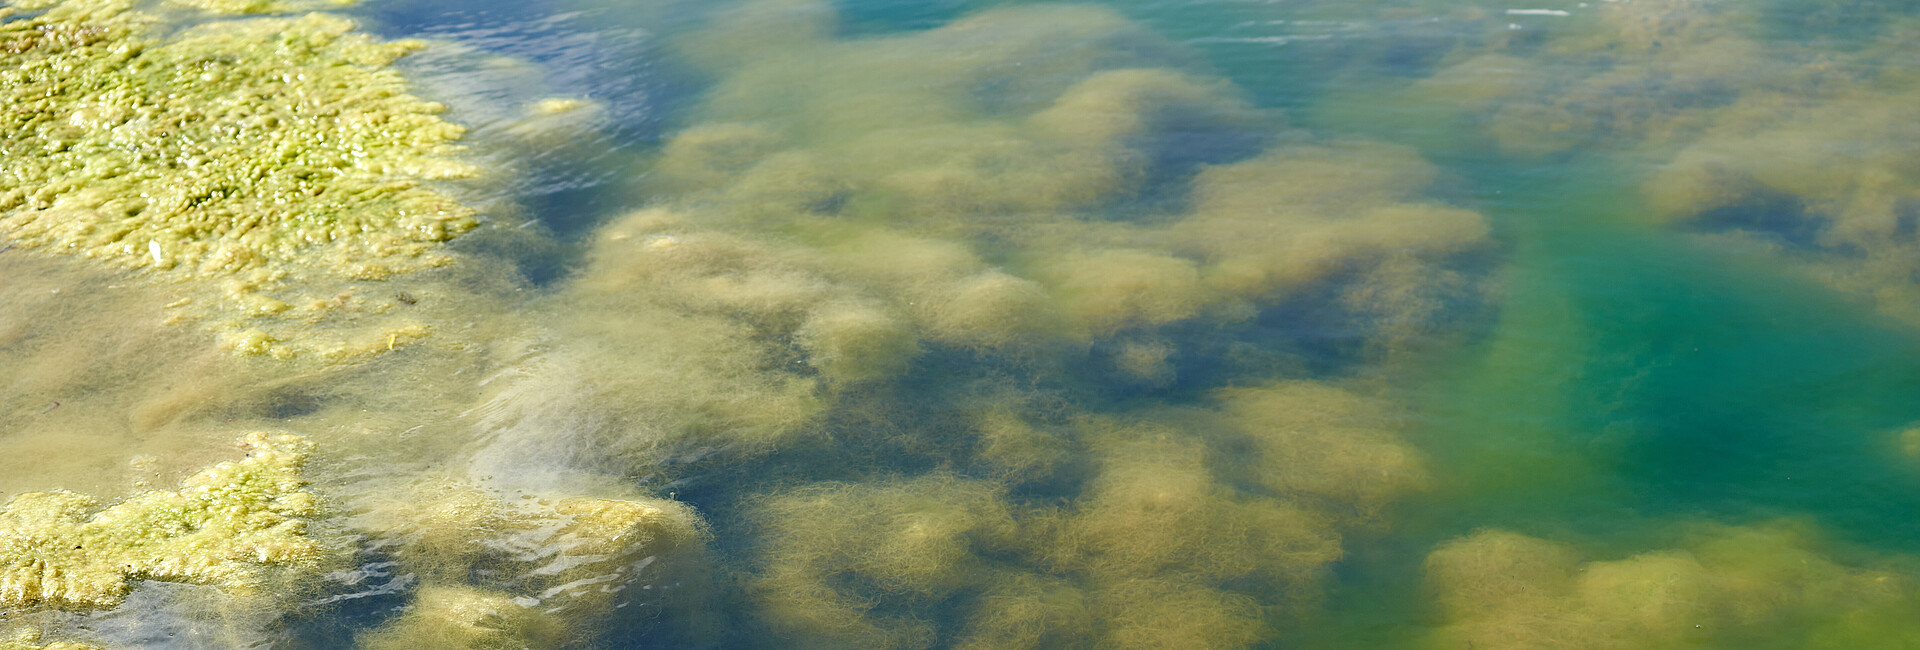 Man blickt in ein Gewässer und sieht im Untergrund grüne Algen, ebenso auf der Wasseroberfläche